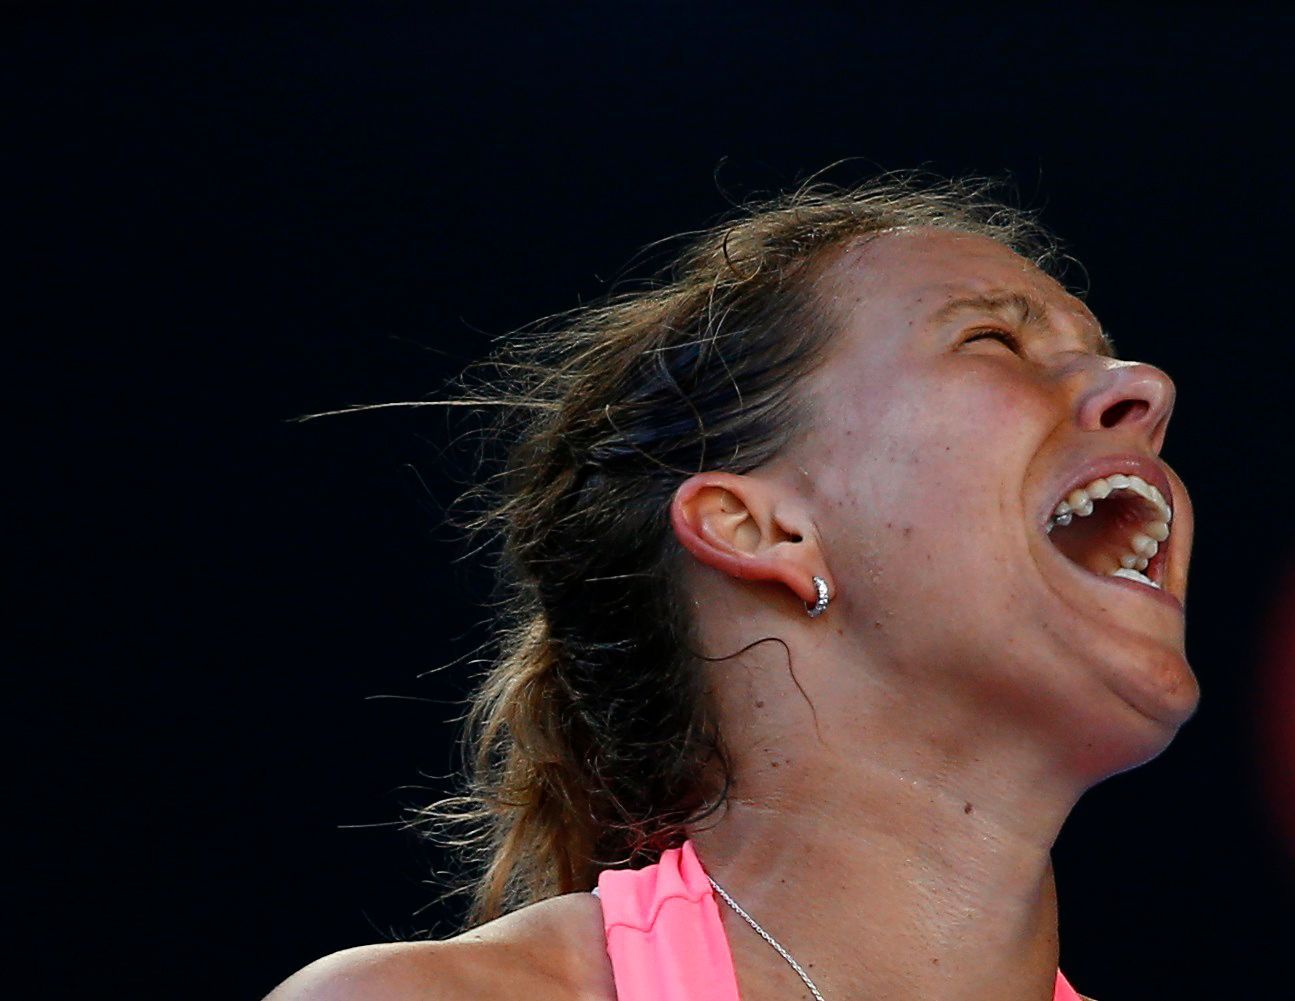 Australian Open 2015: Barbora Záhlavova-Strýcová